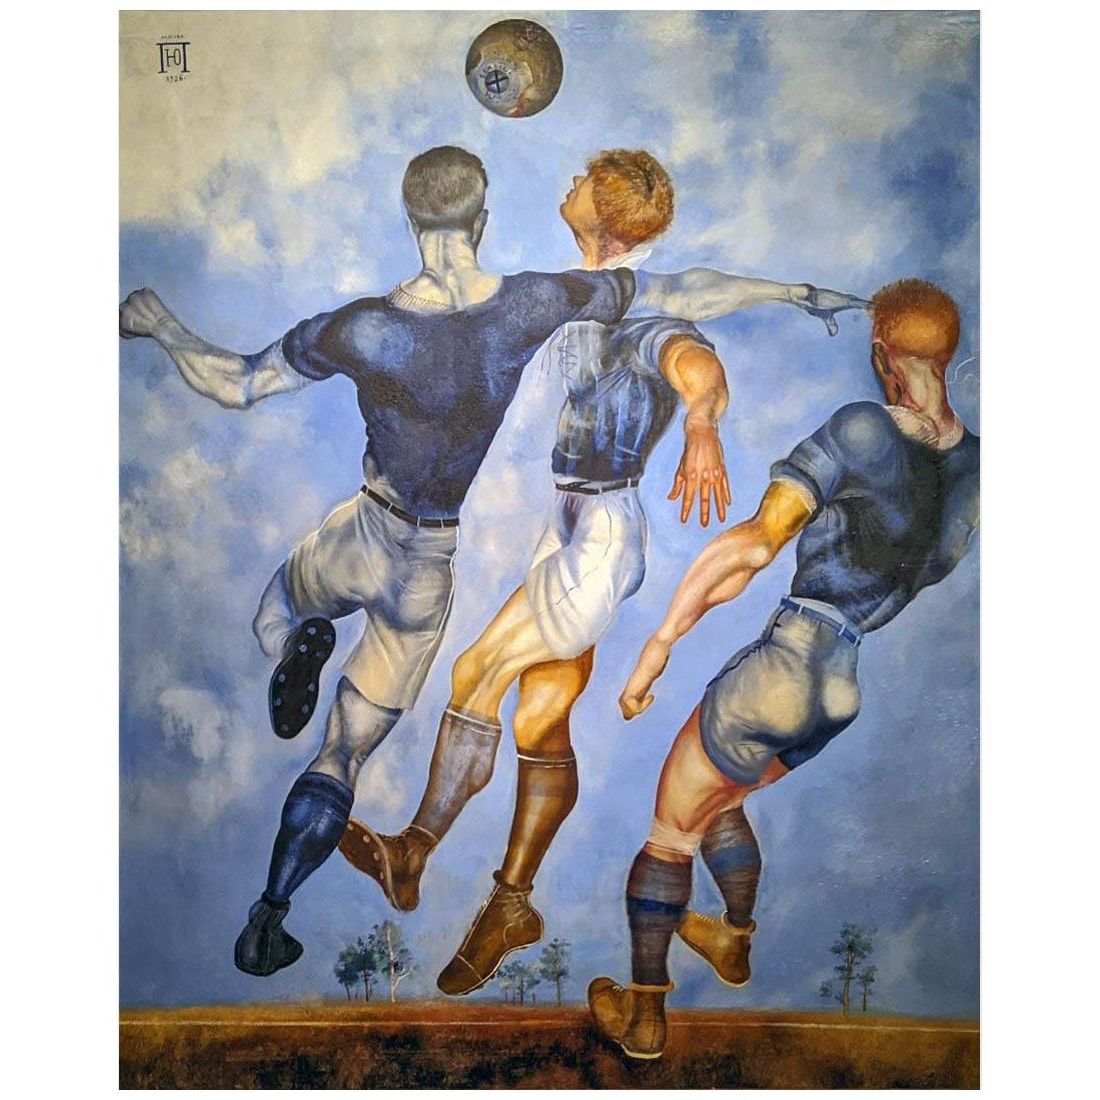 Юрий Пименов. Футбол. 1926. Астраханская картинная галерея